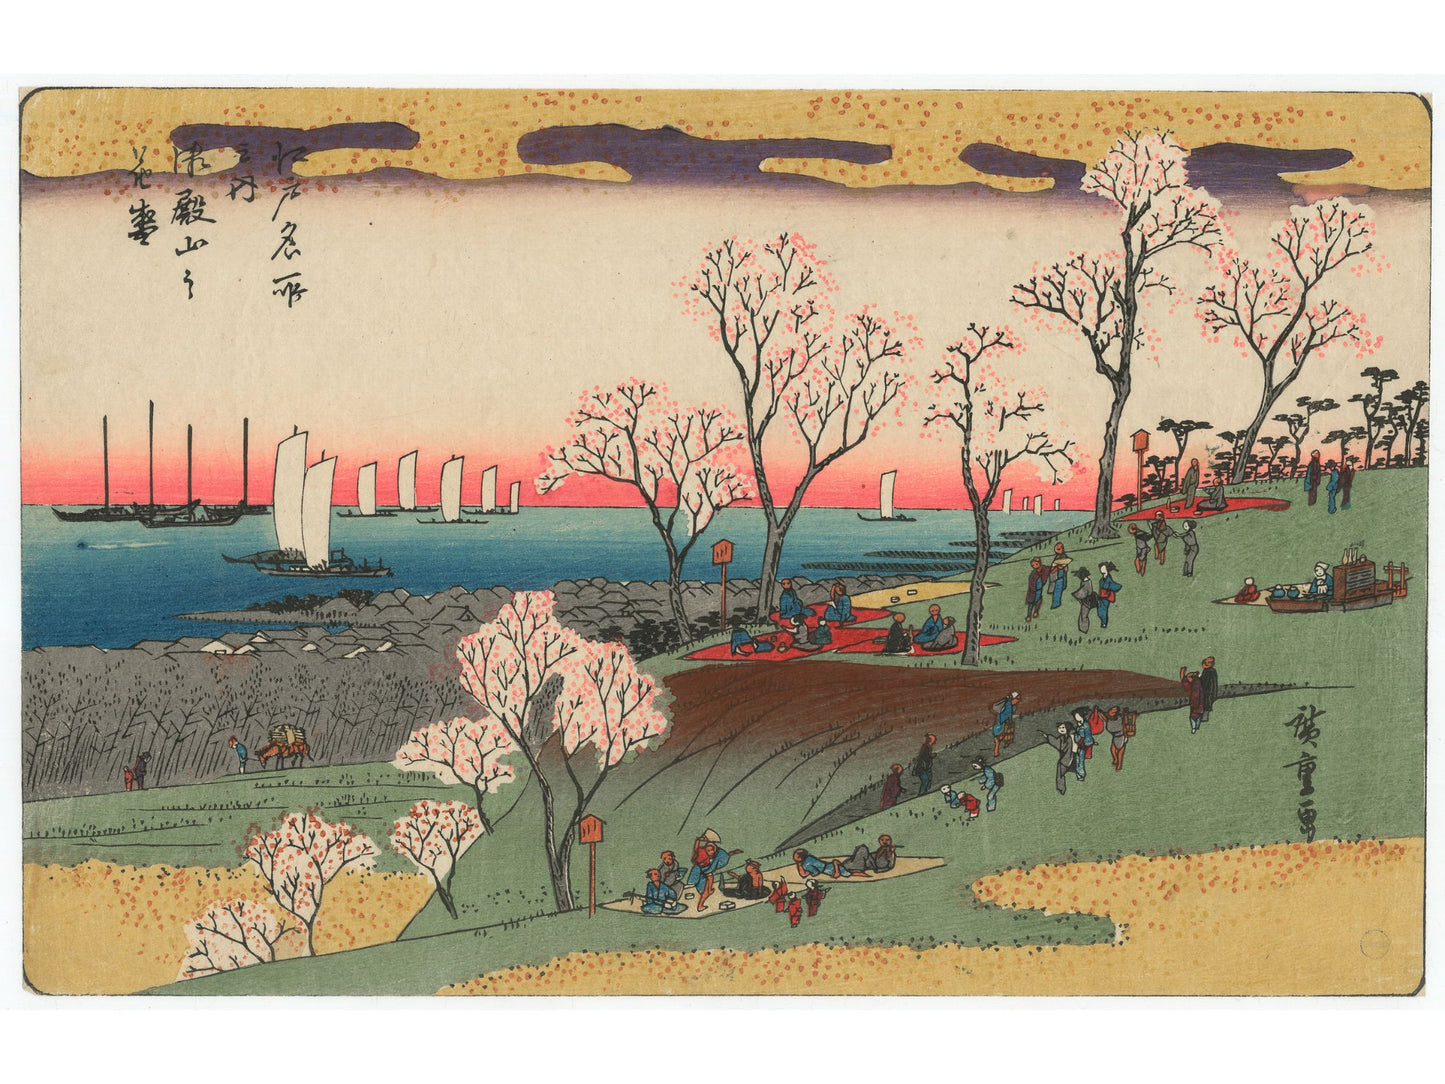 Estampe Japonaise de Hiroshige | Edo Meisho pique-nique sous les cerisiers en fleurs pour Hanami, mer et bateaux au loin